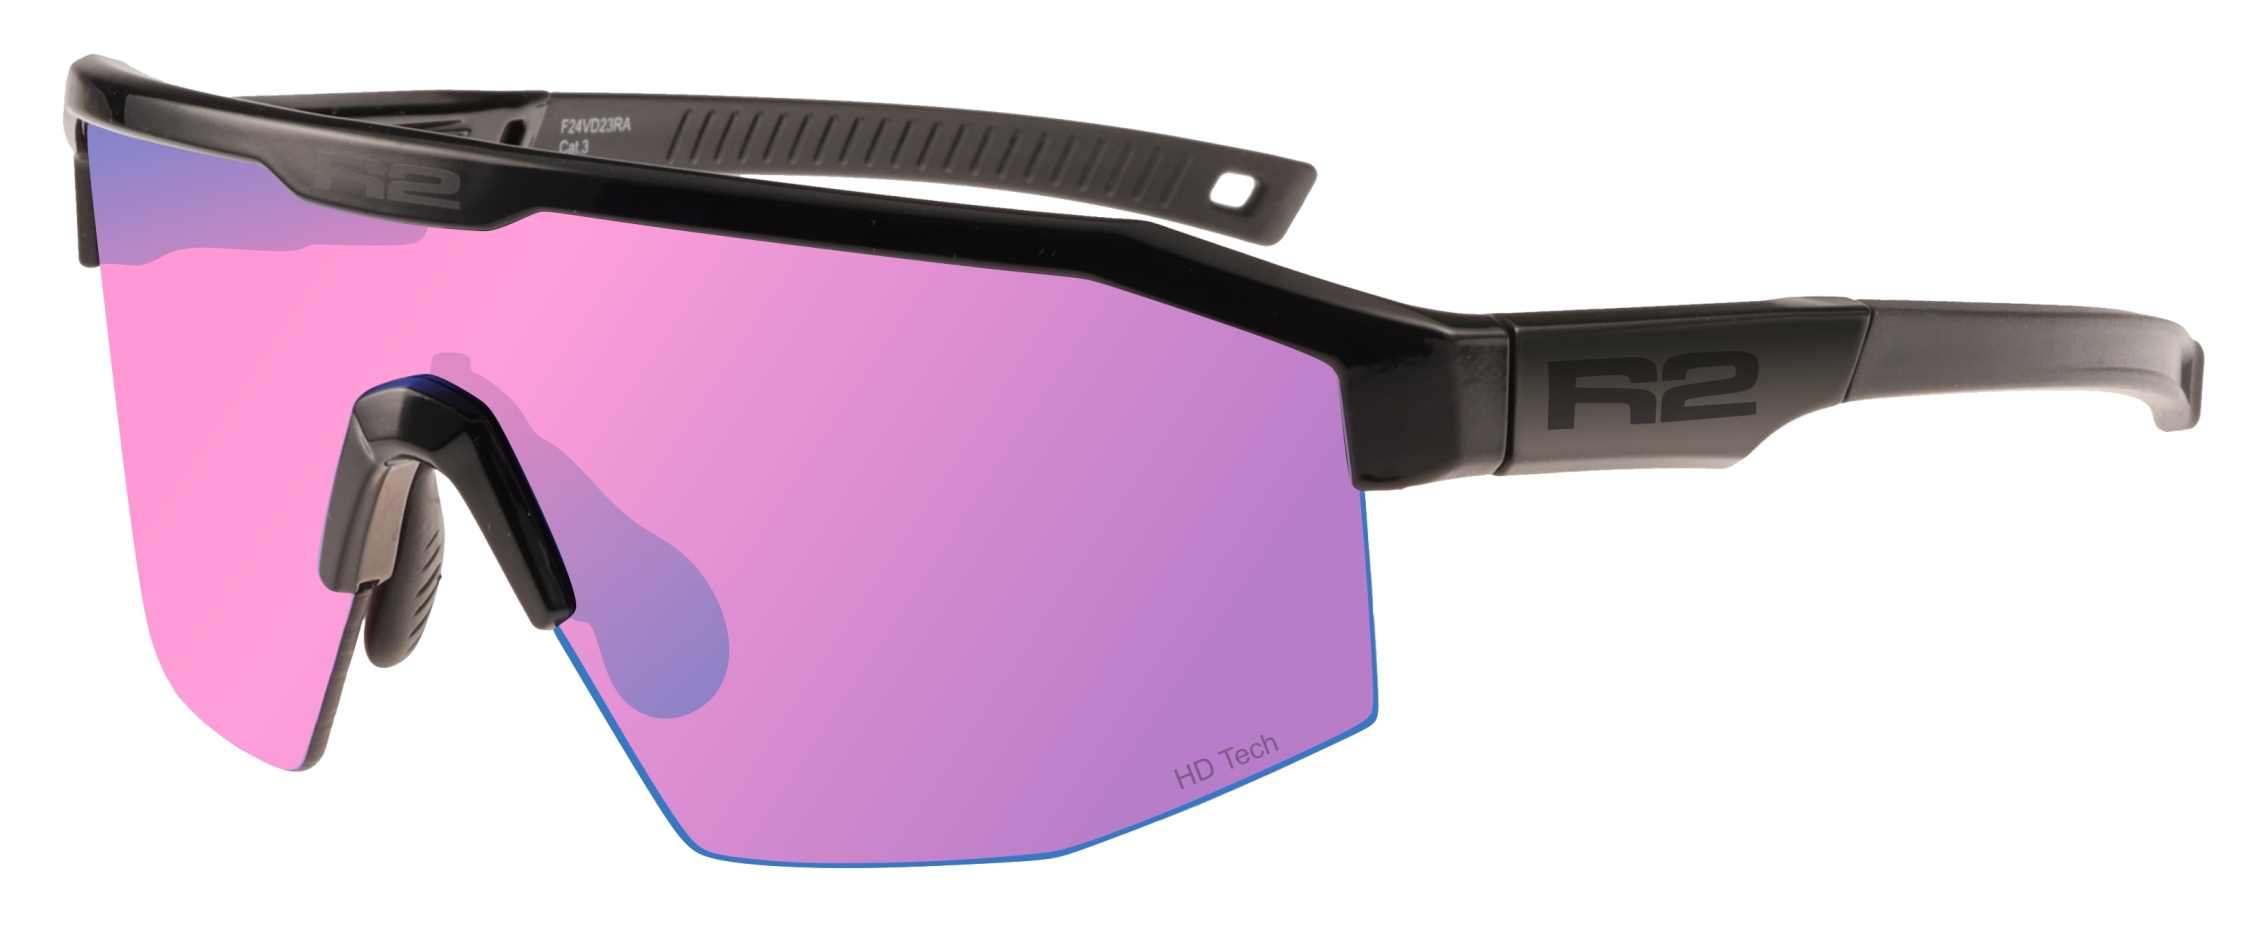 HD sportovní sluneční brýle R2 GAIN AT108A - standard